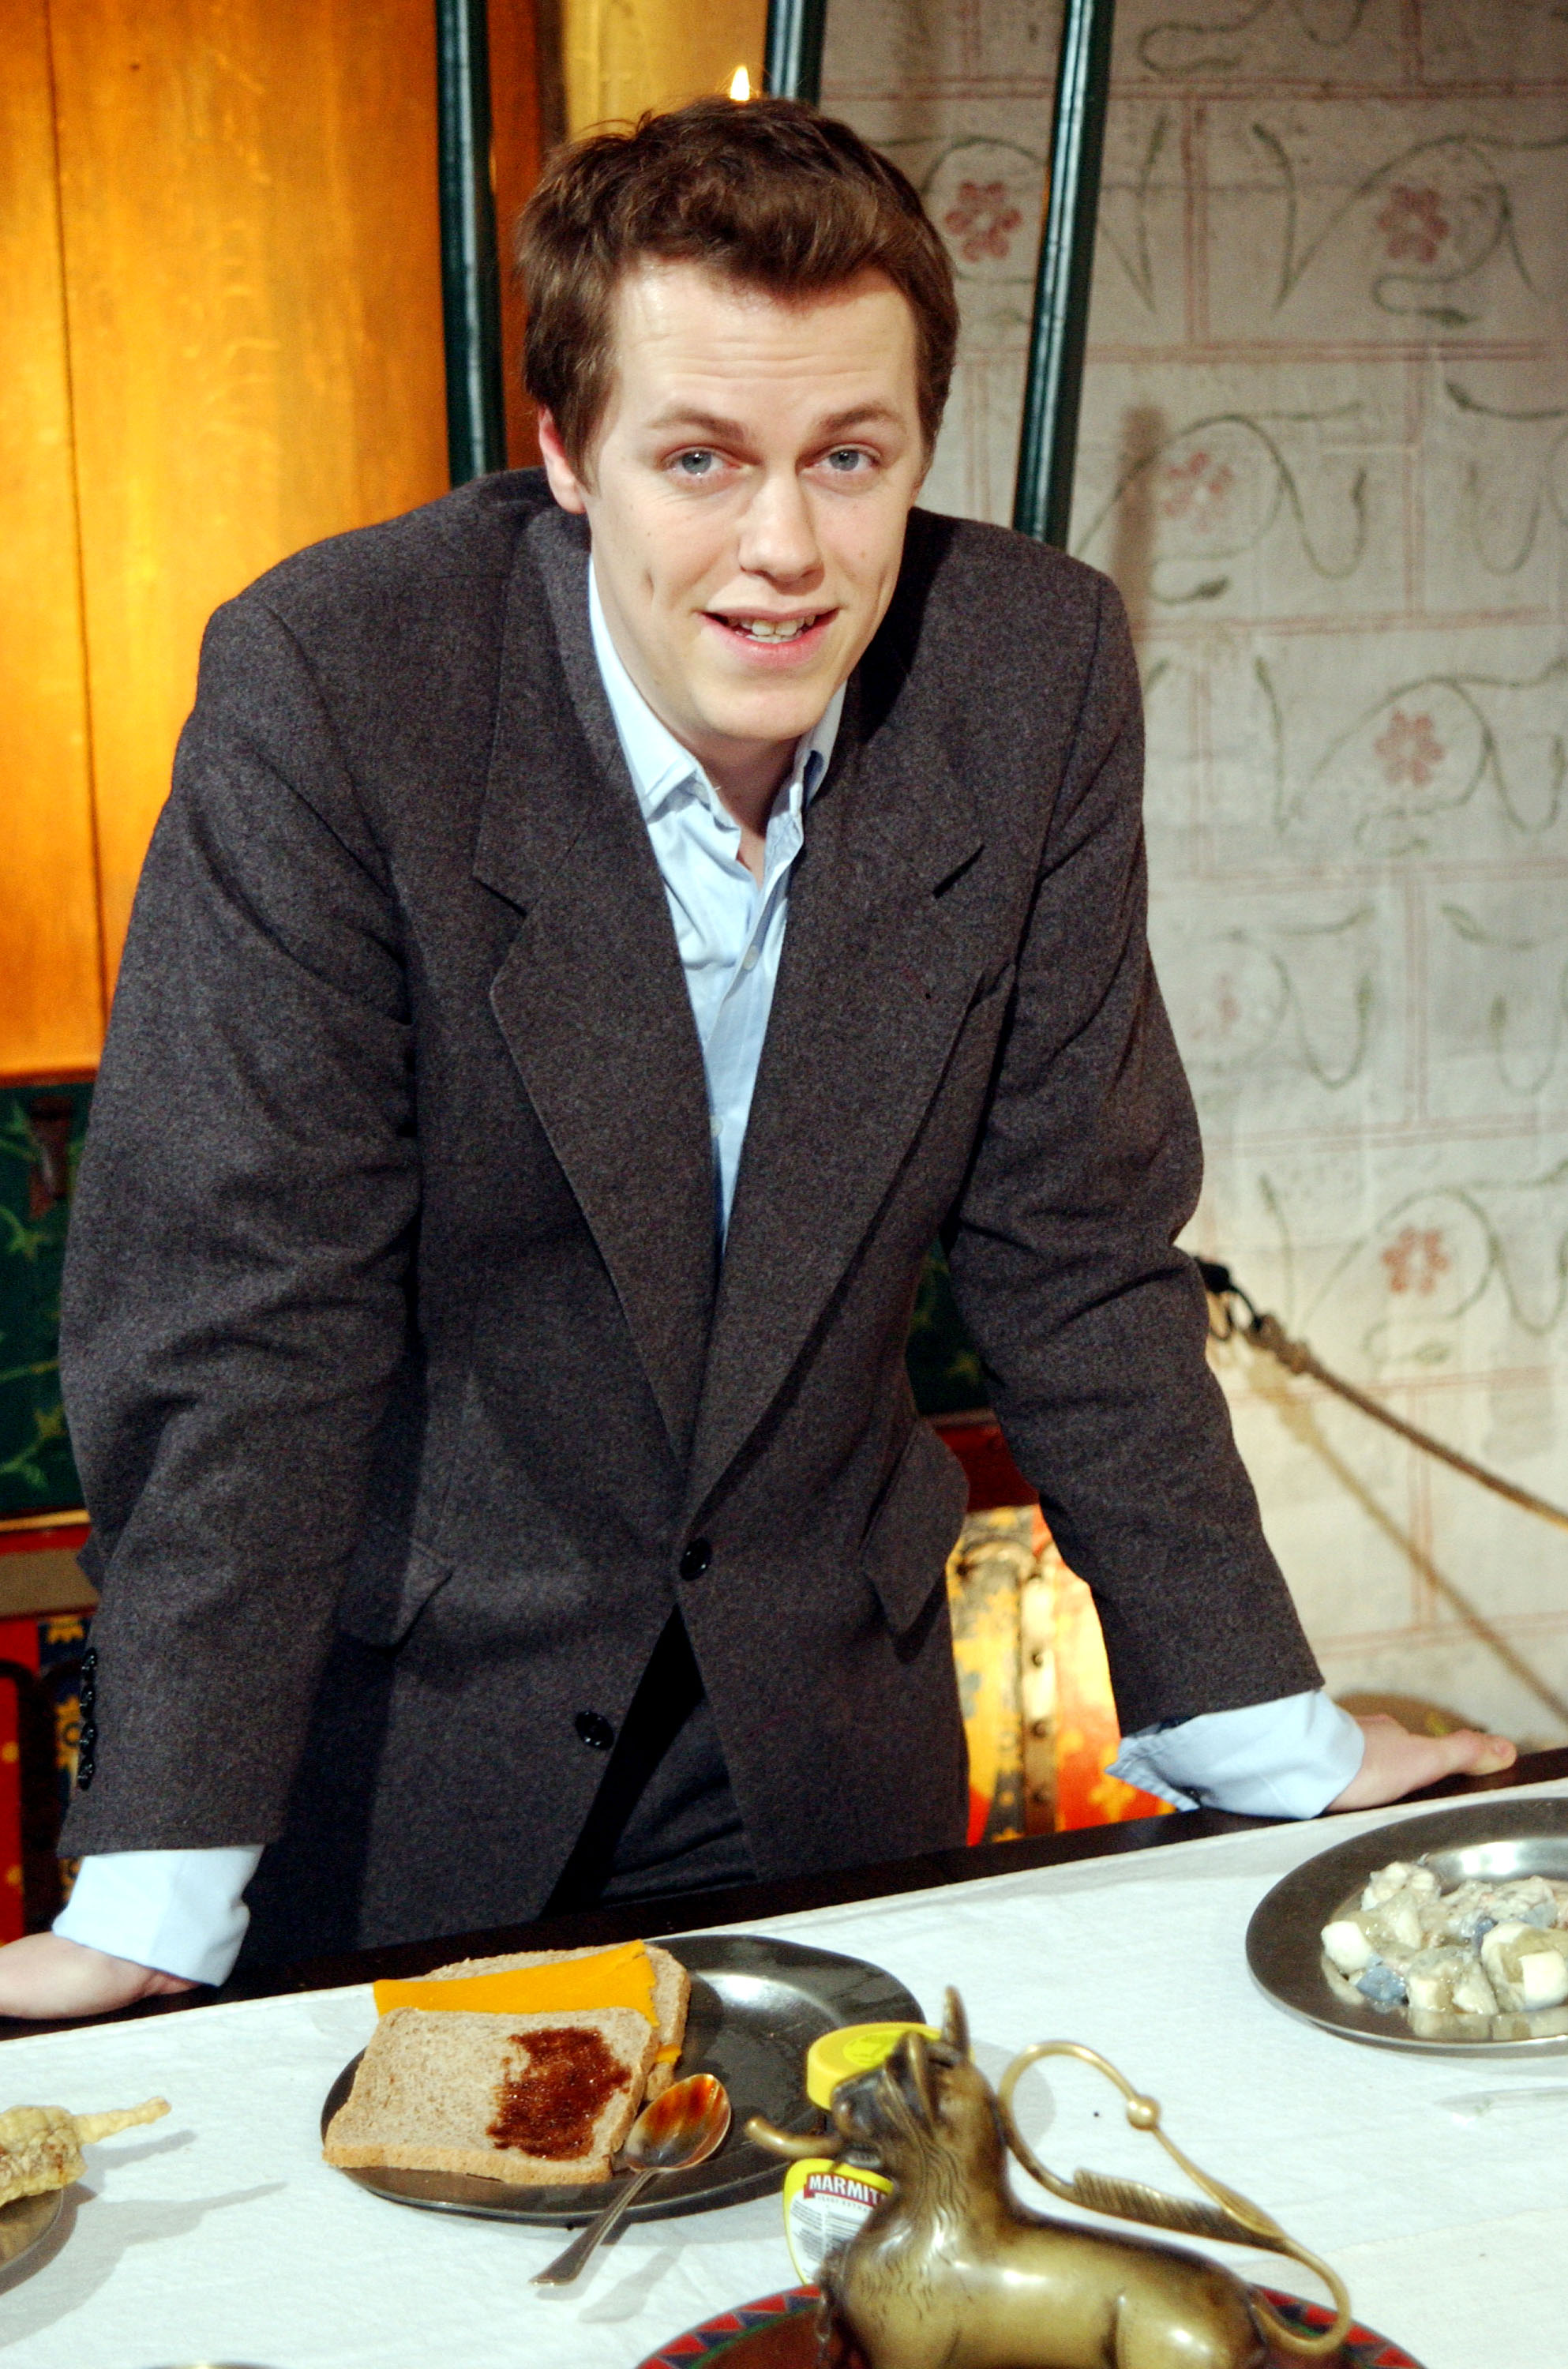 Le garçon à Londres le 6 février 2002. | Source : Getty Images